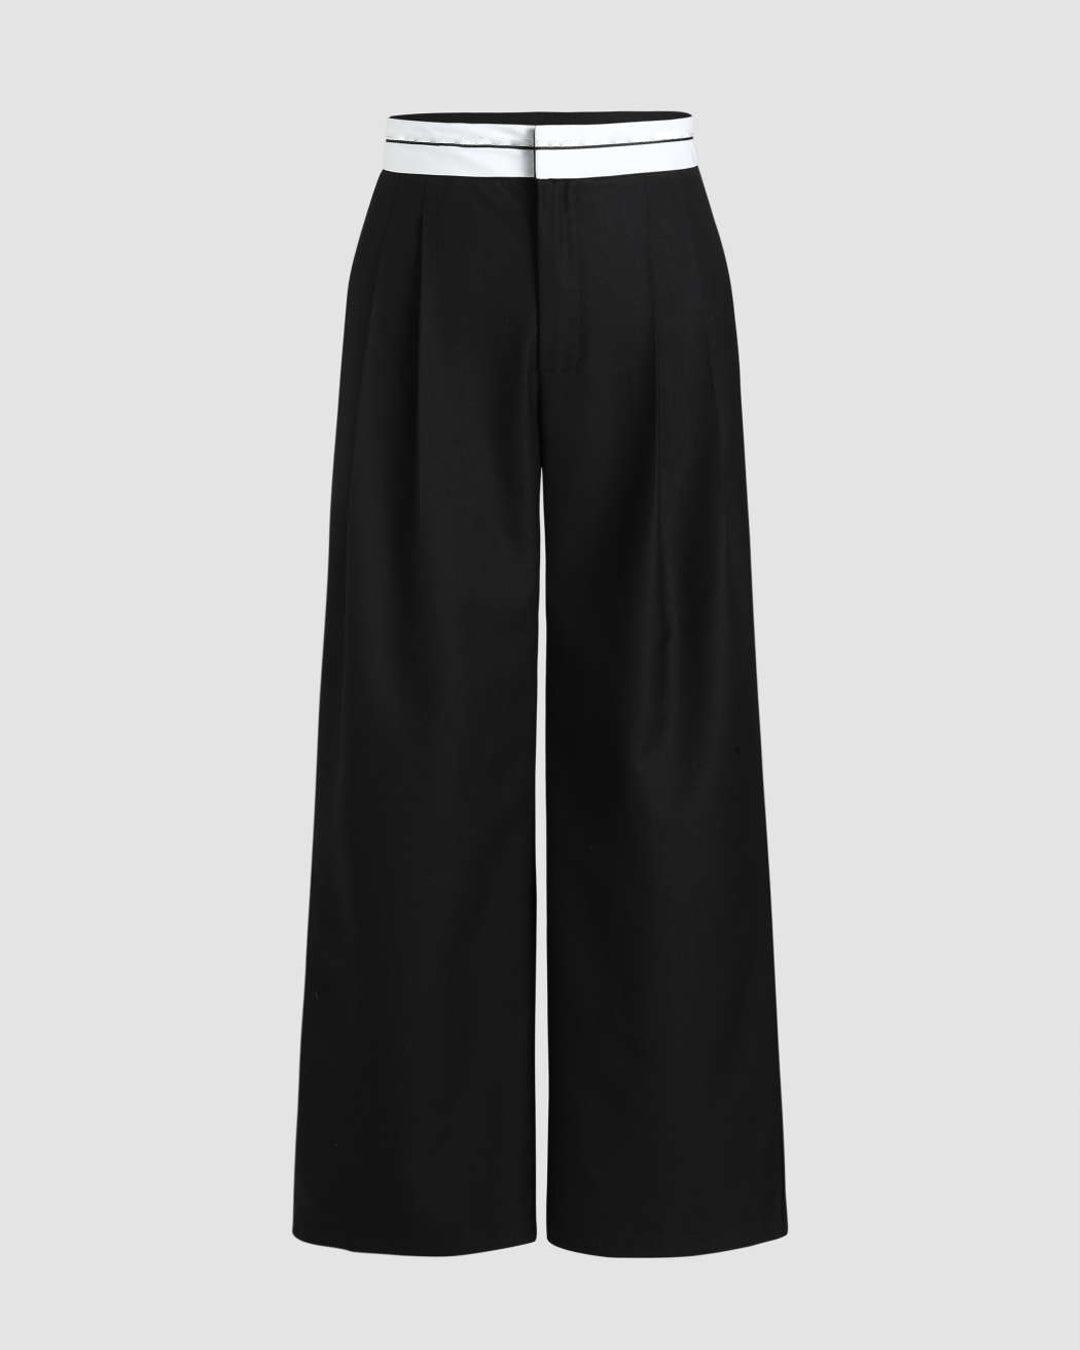 Trending Color Block Black & White Trouser – Littlebox India